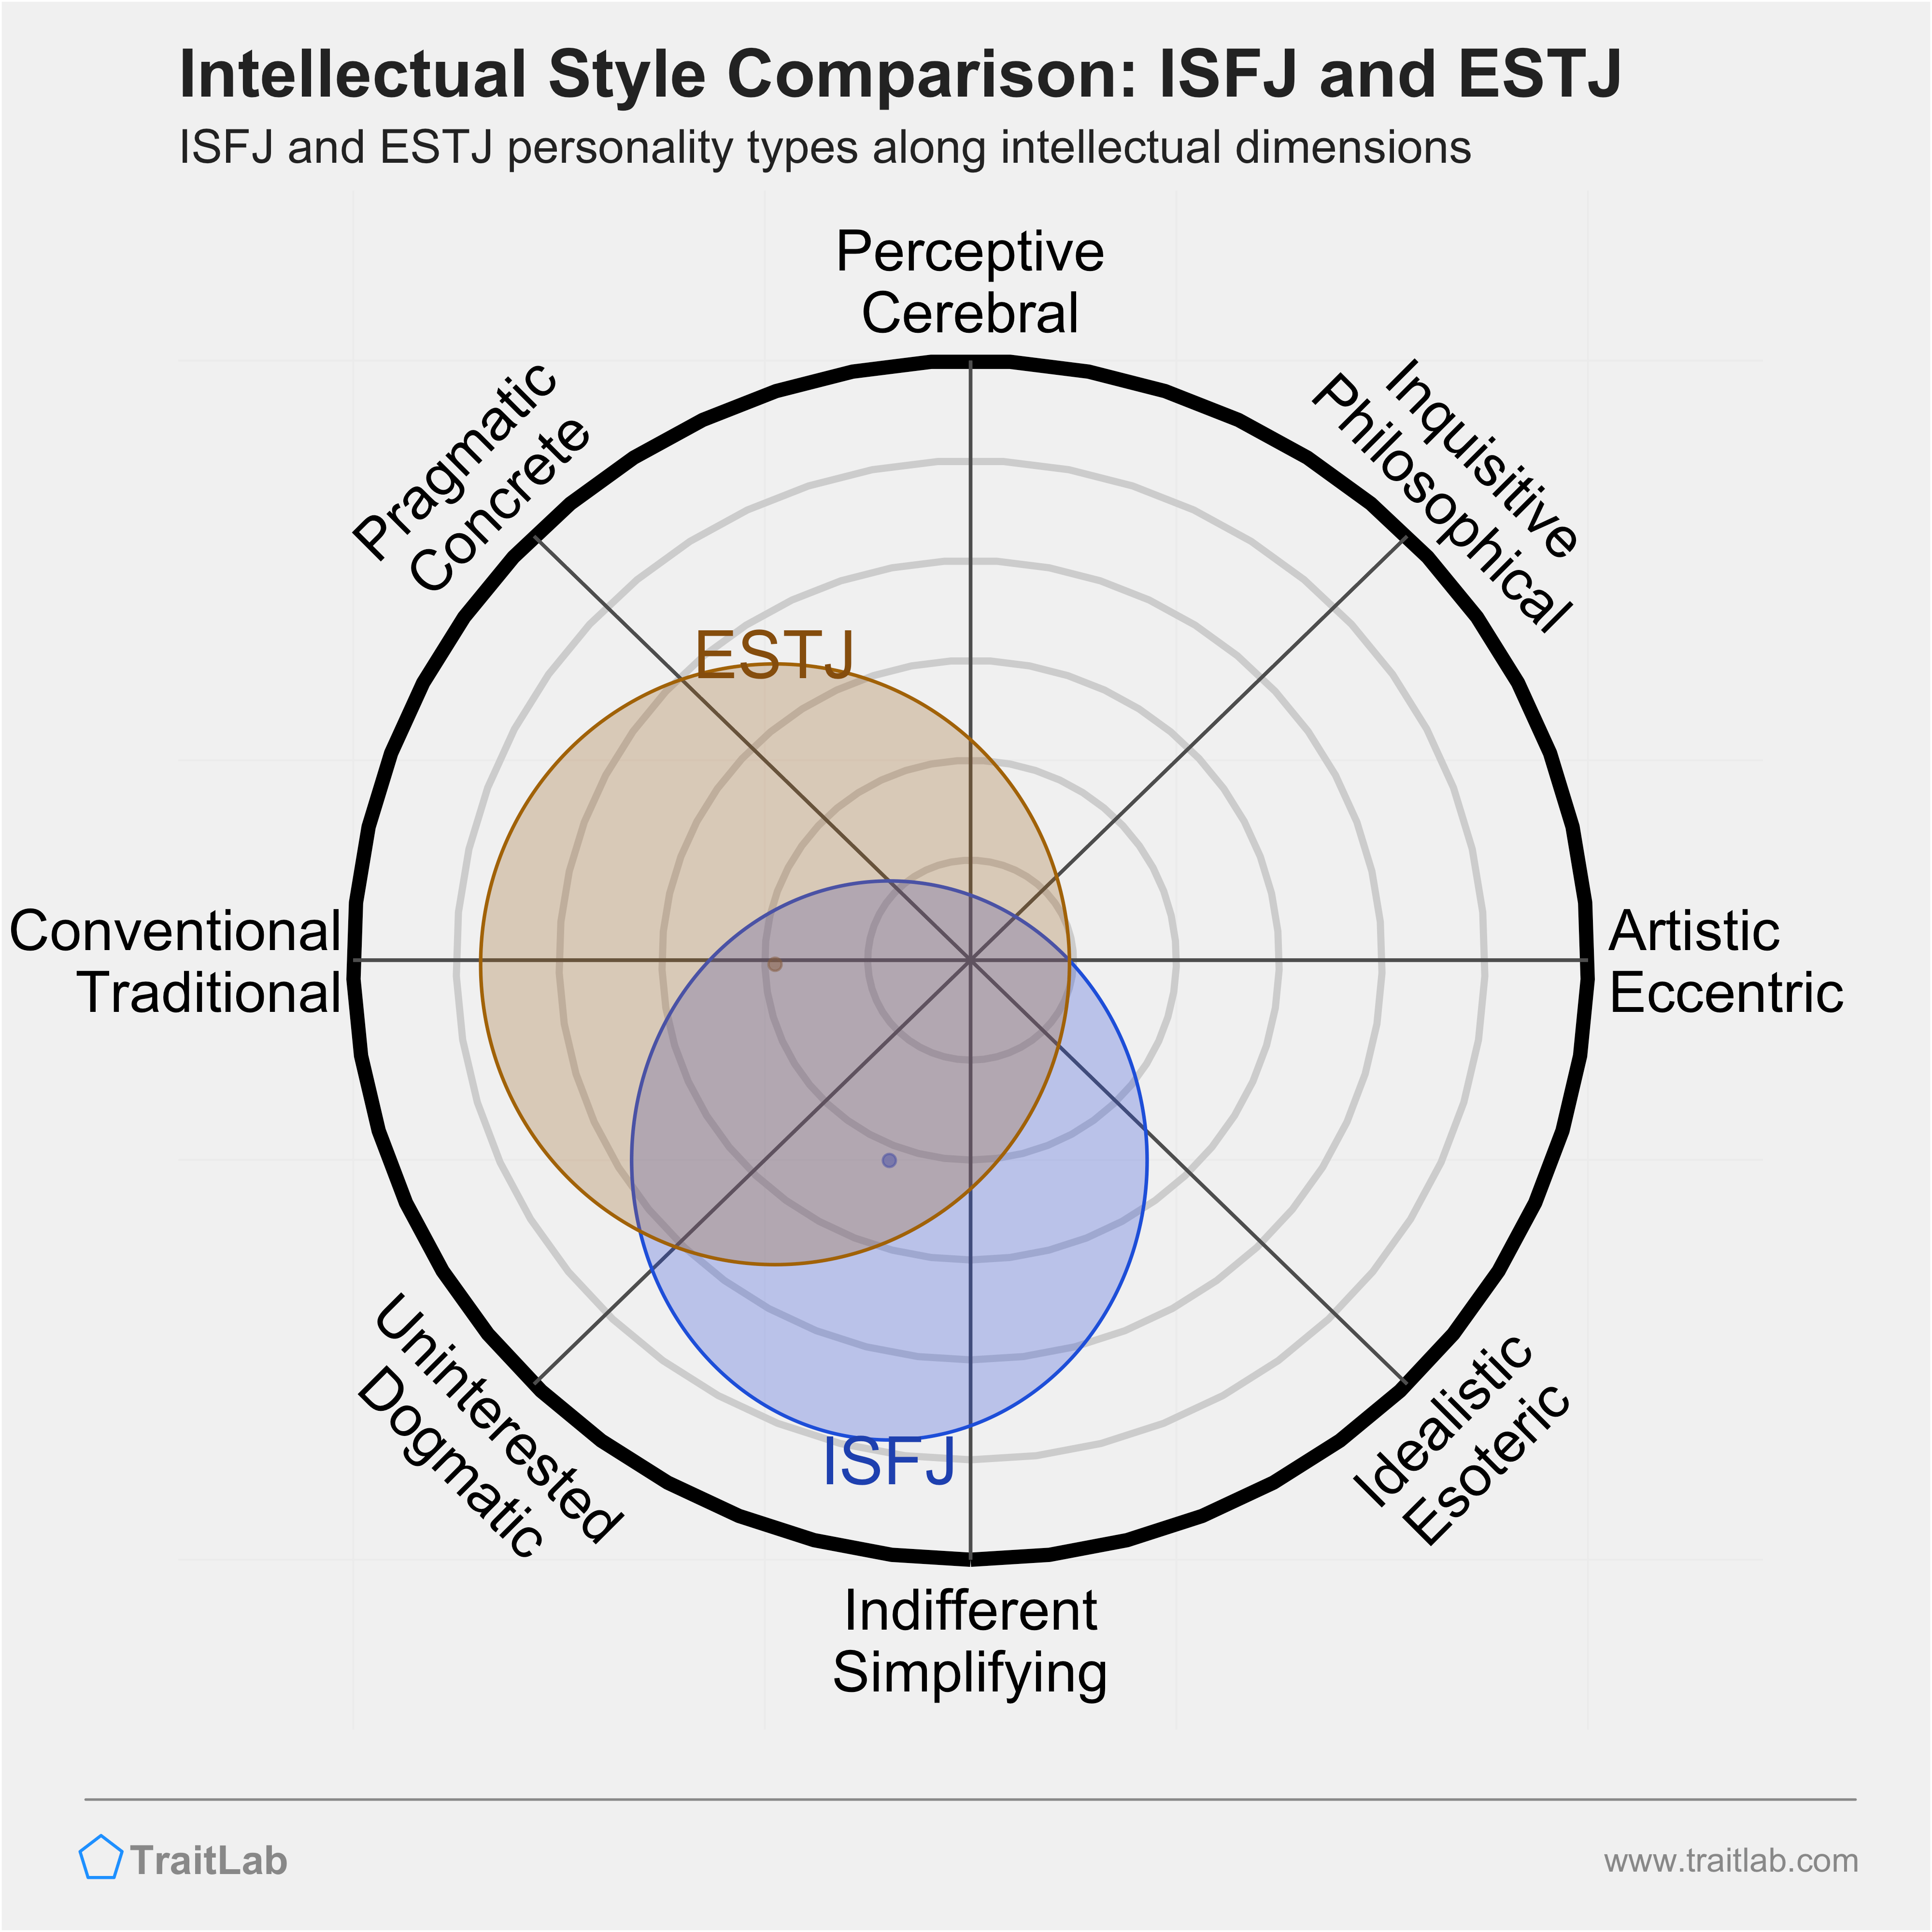 ISFJ and ESTJ comparison across intellectual dimensions